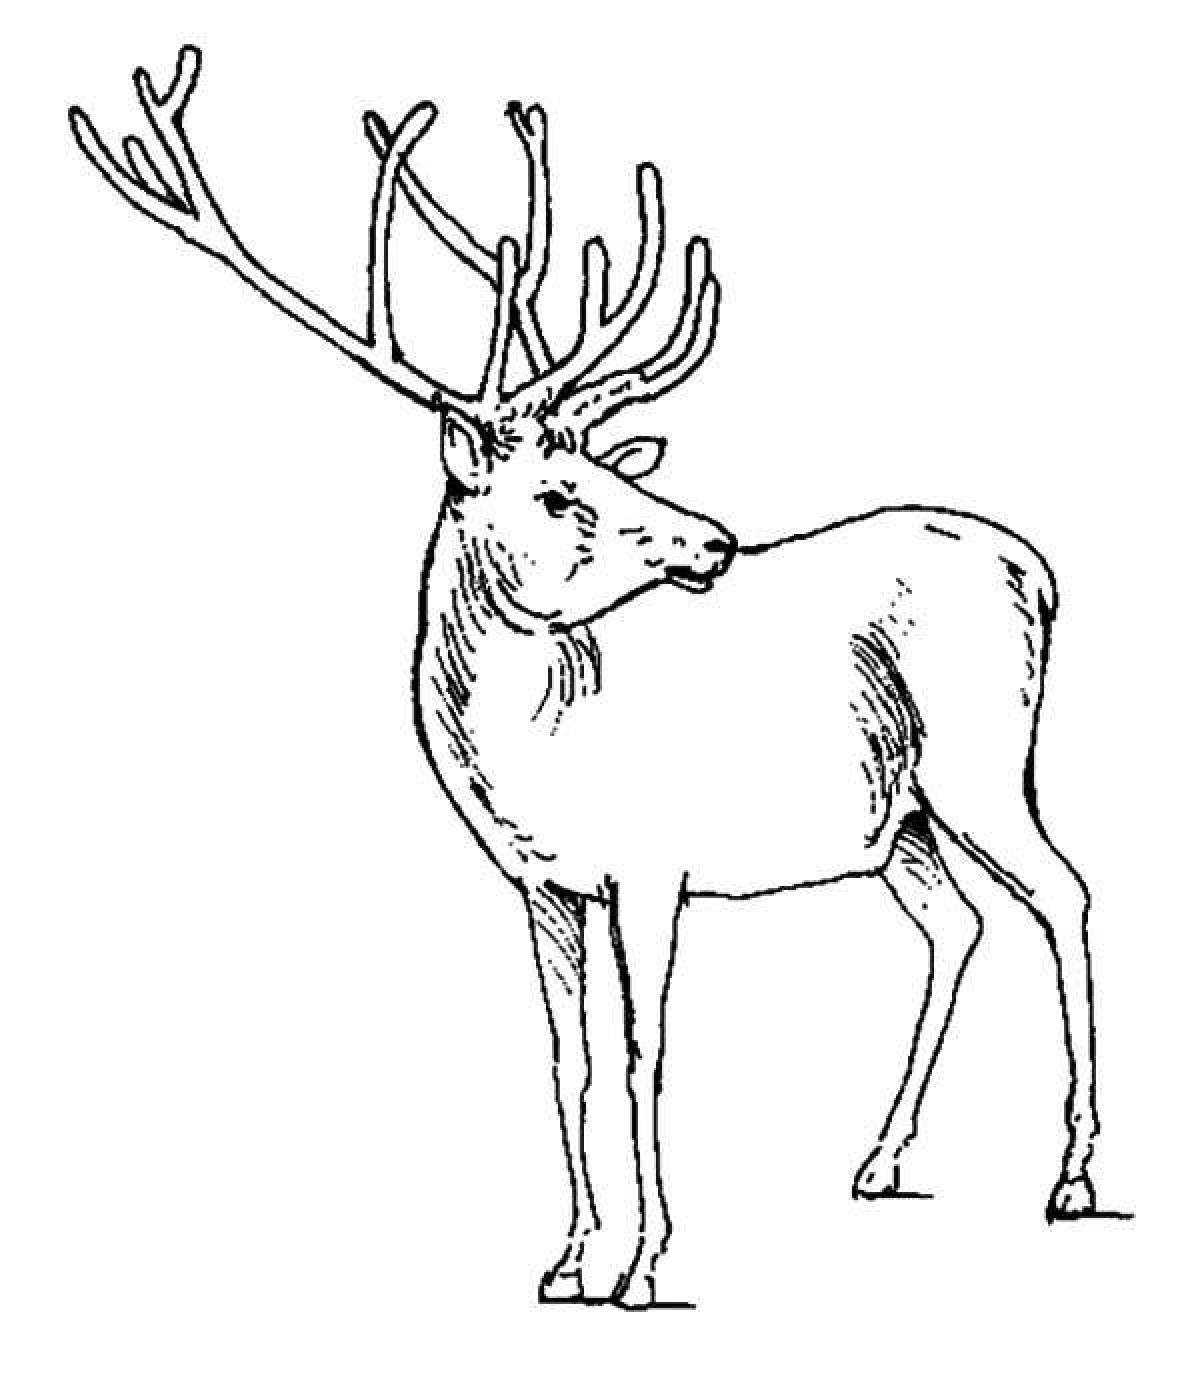 A fun deer coloring book for kids